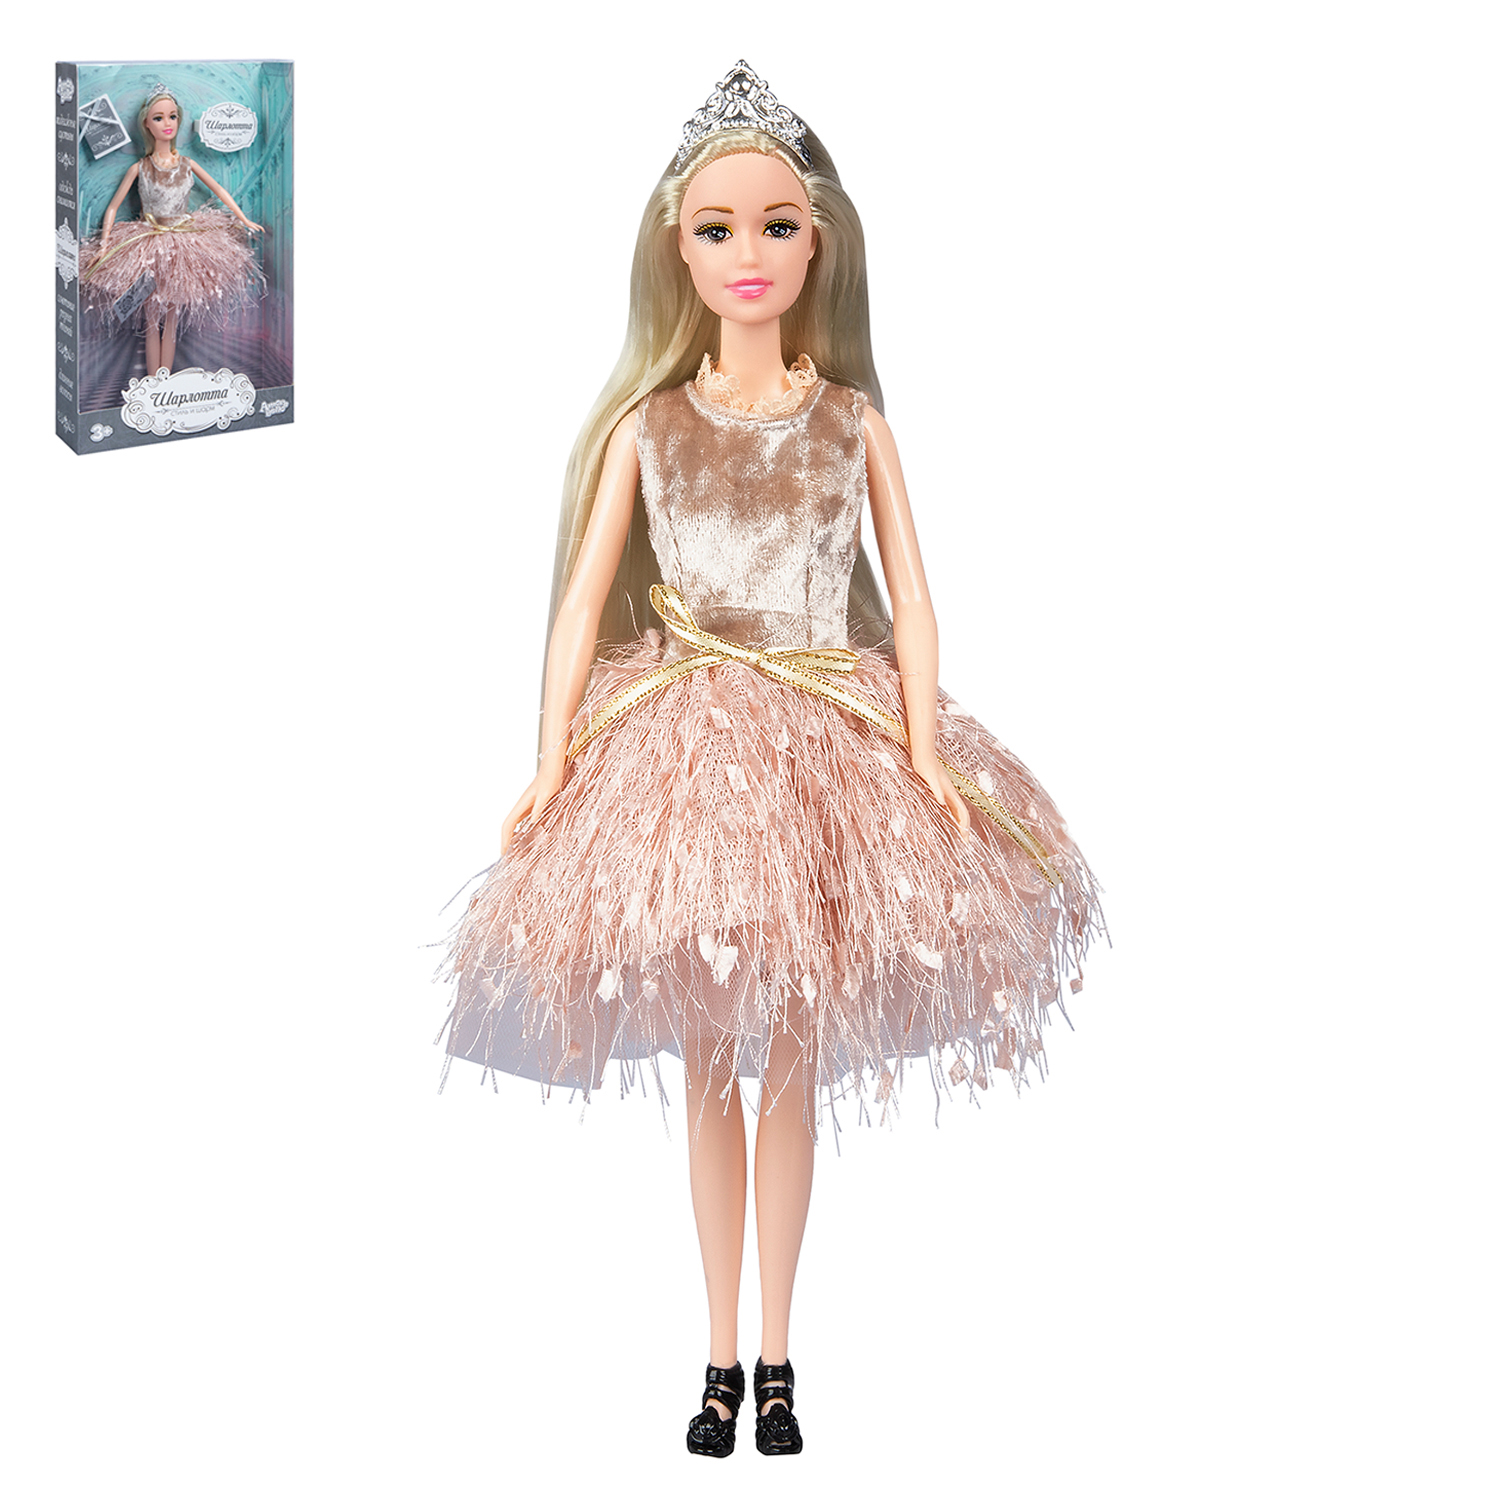 Кукла модельная Шарлота ТМ Amore Bello, подвижные элементы, подарочная упаковка, JB0211287